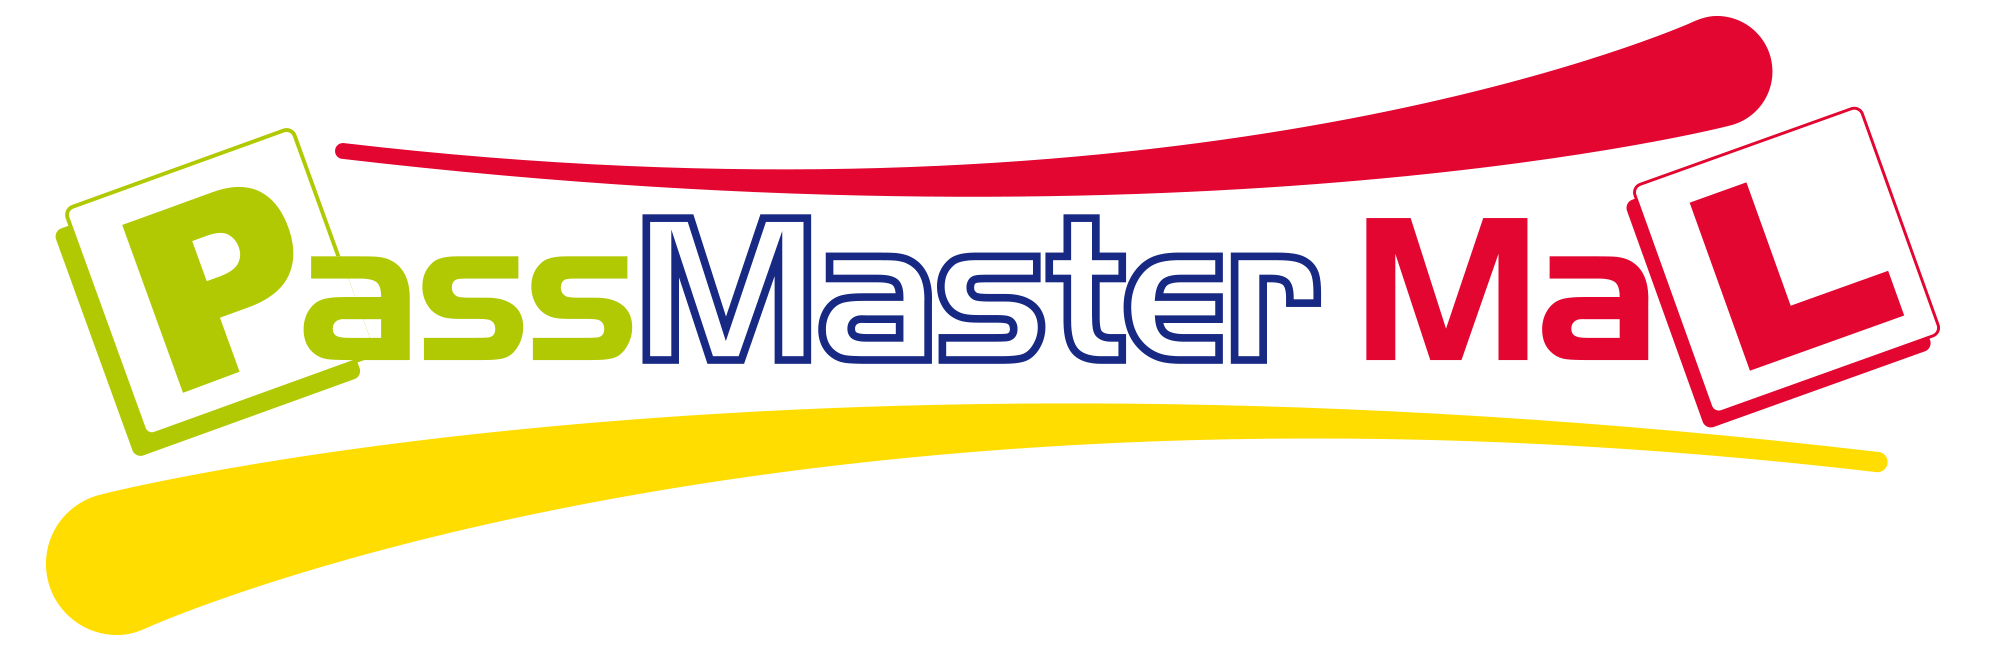 Pass Plus Logo - PassMasterMal | Pass Plus